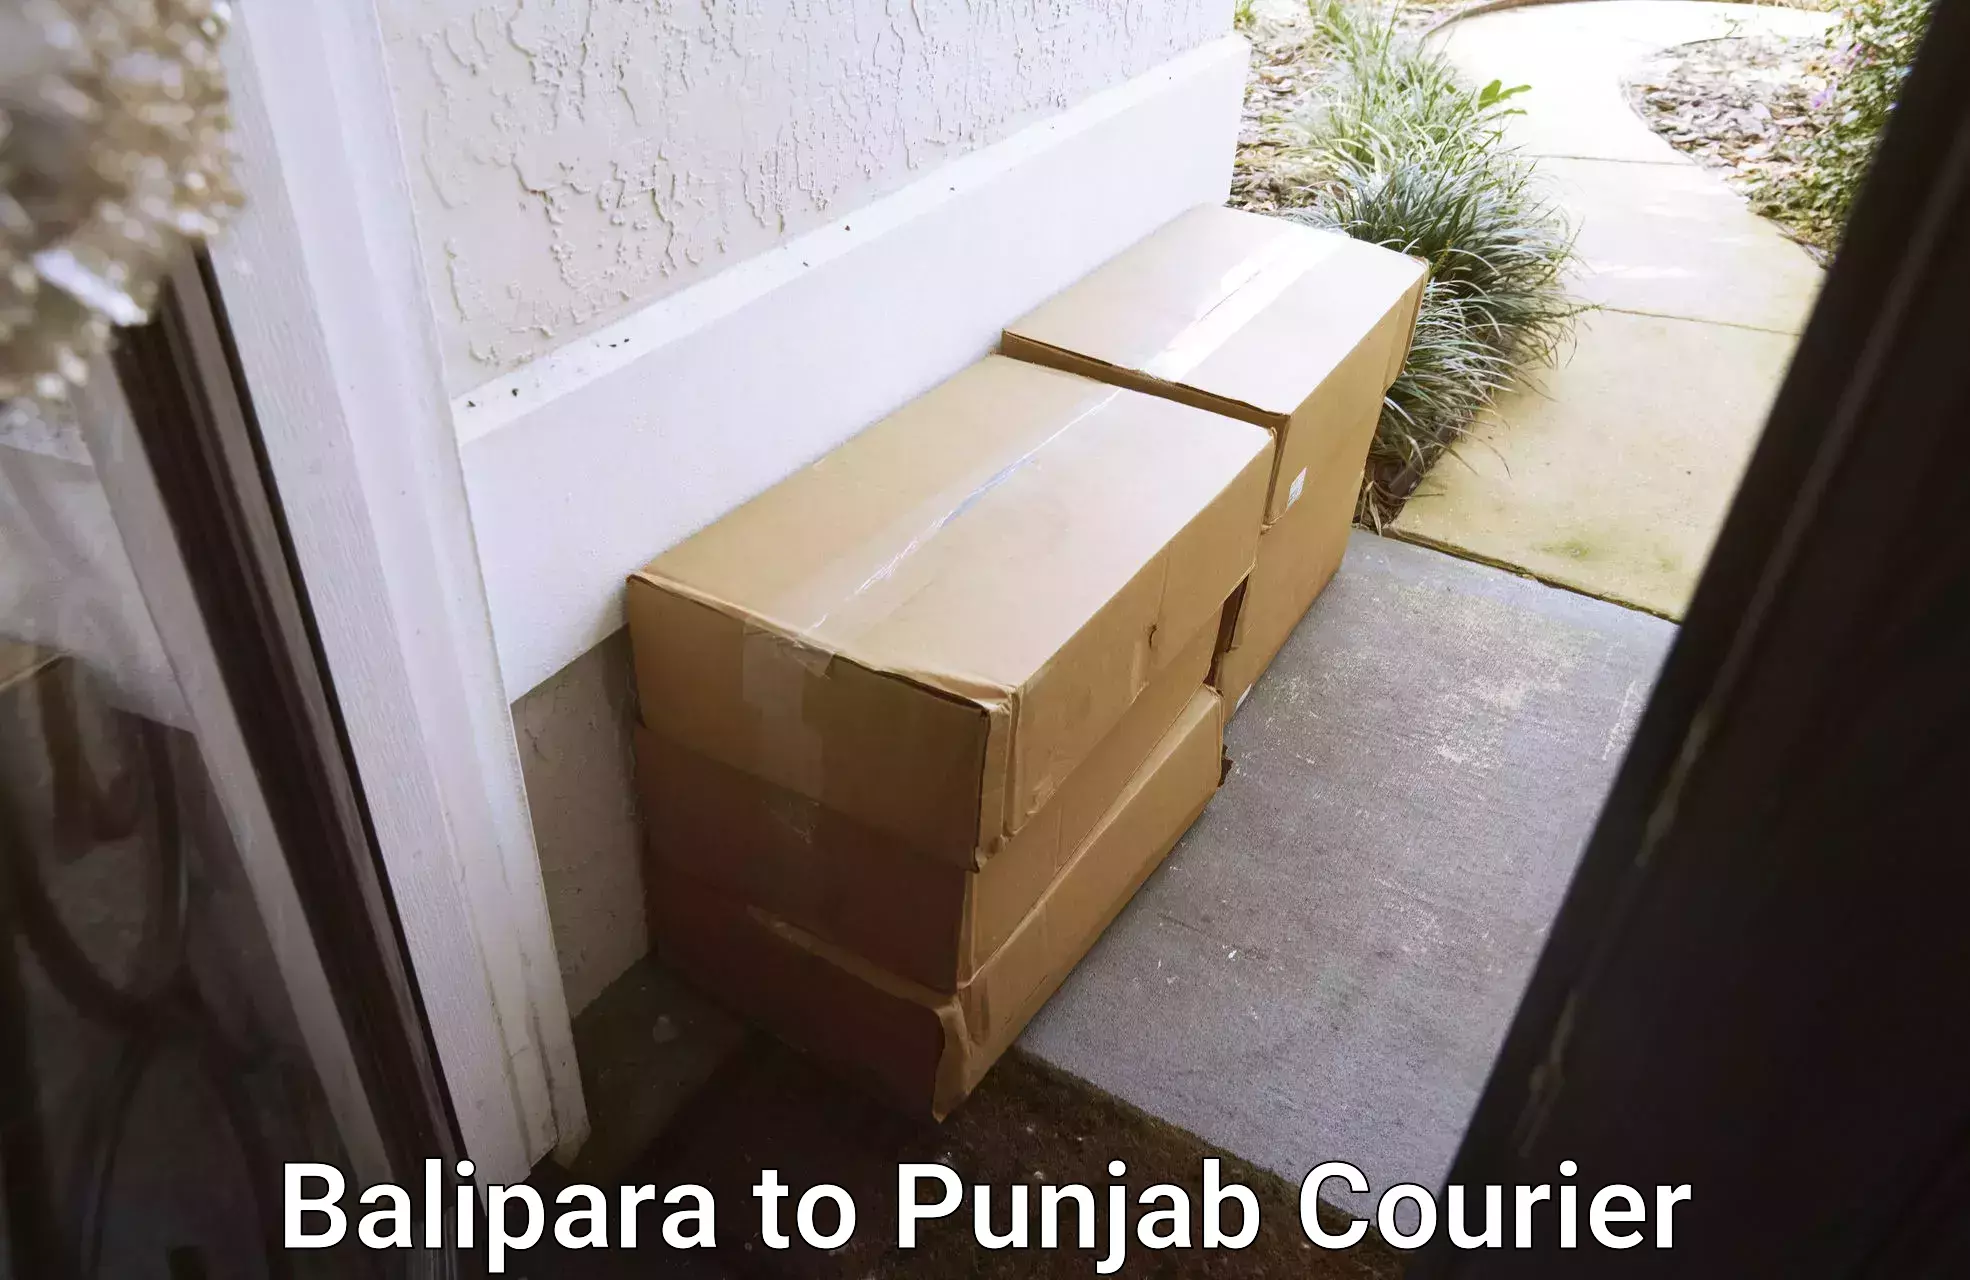 Online courier booking Balipara to Punjab